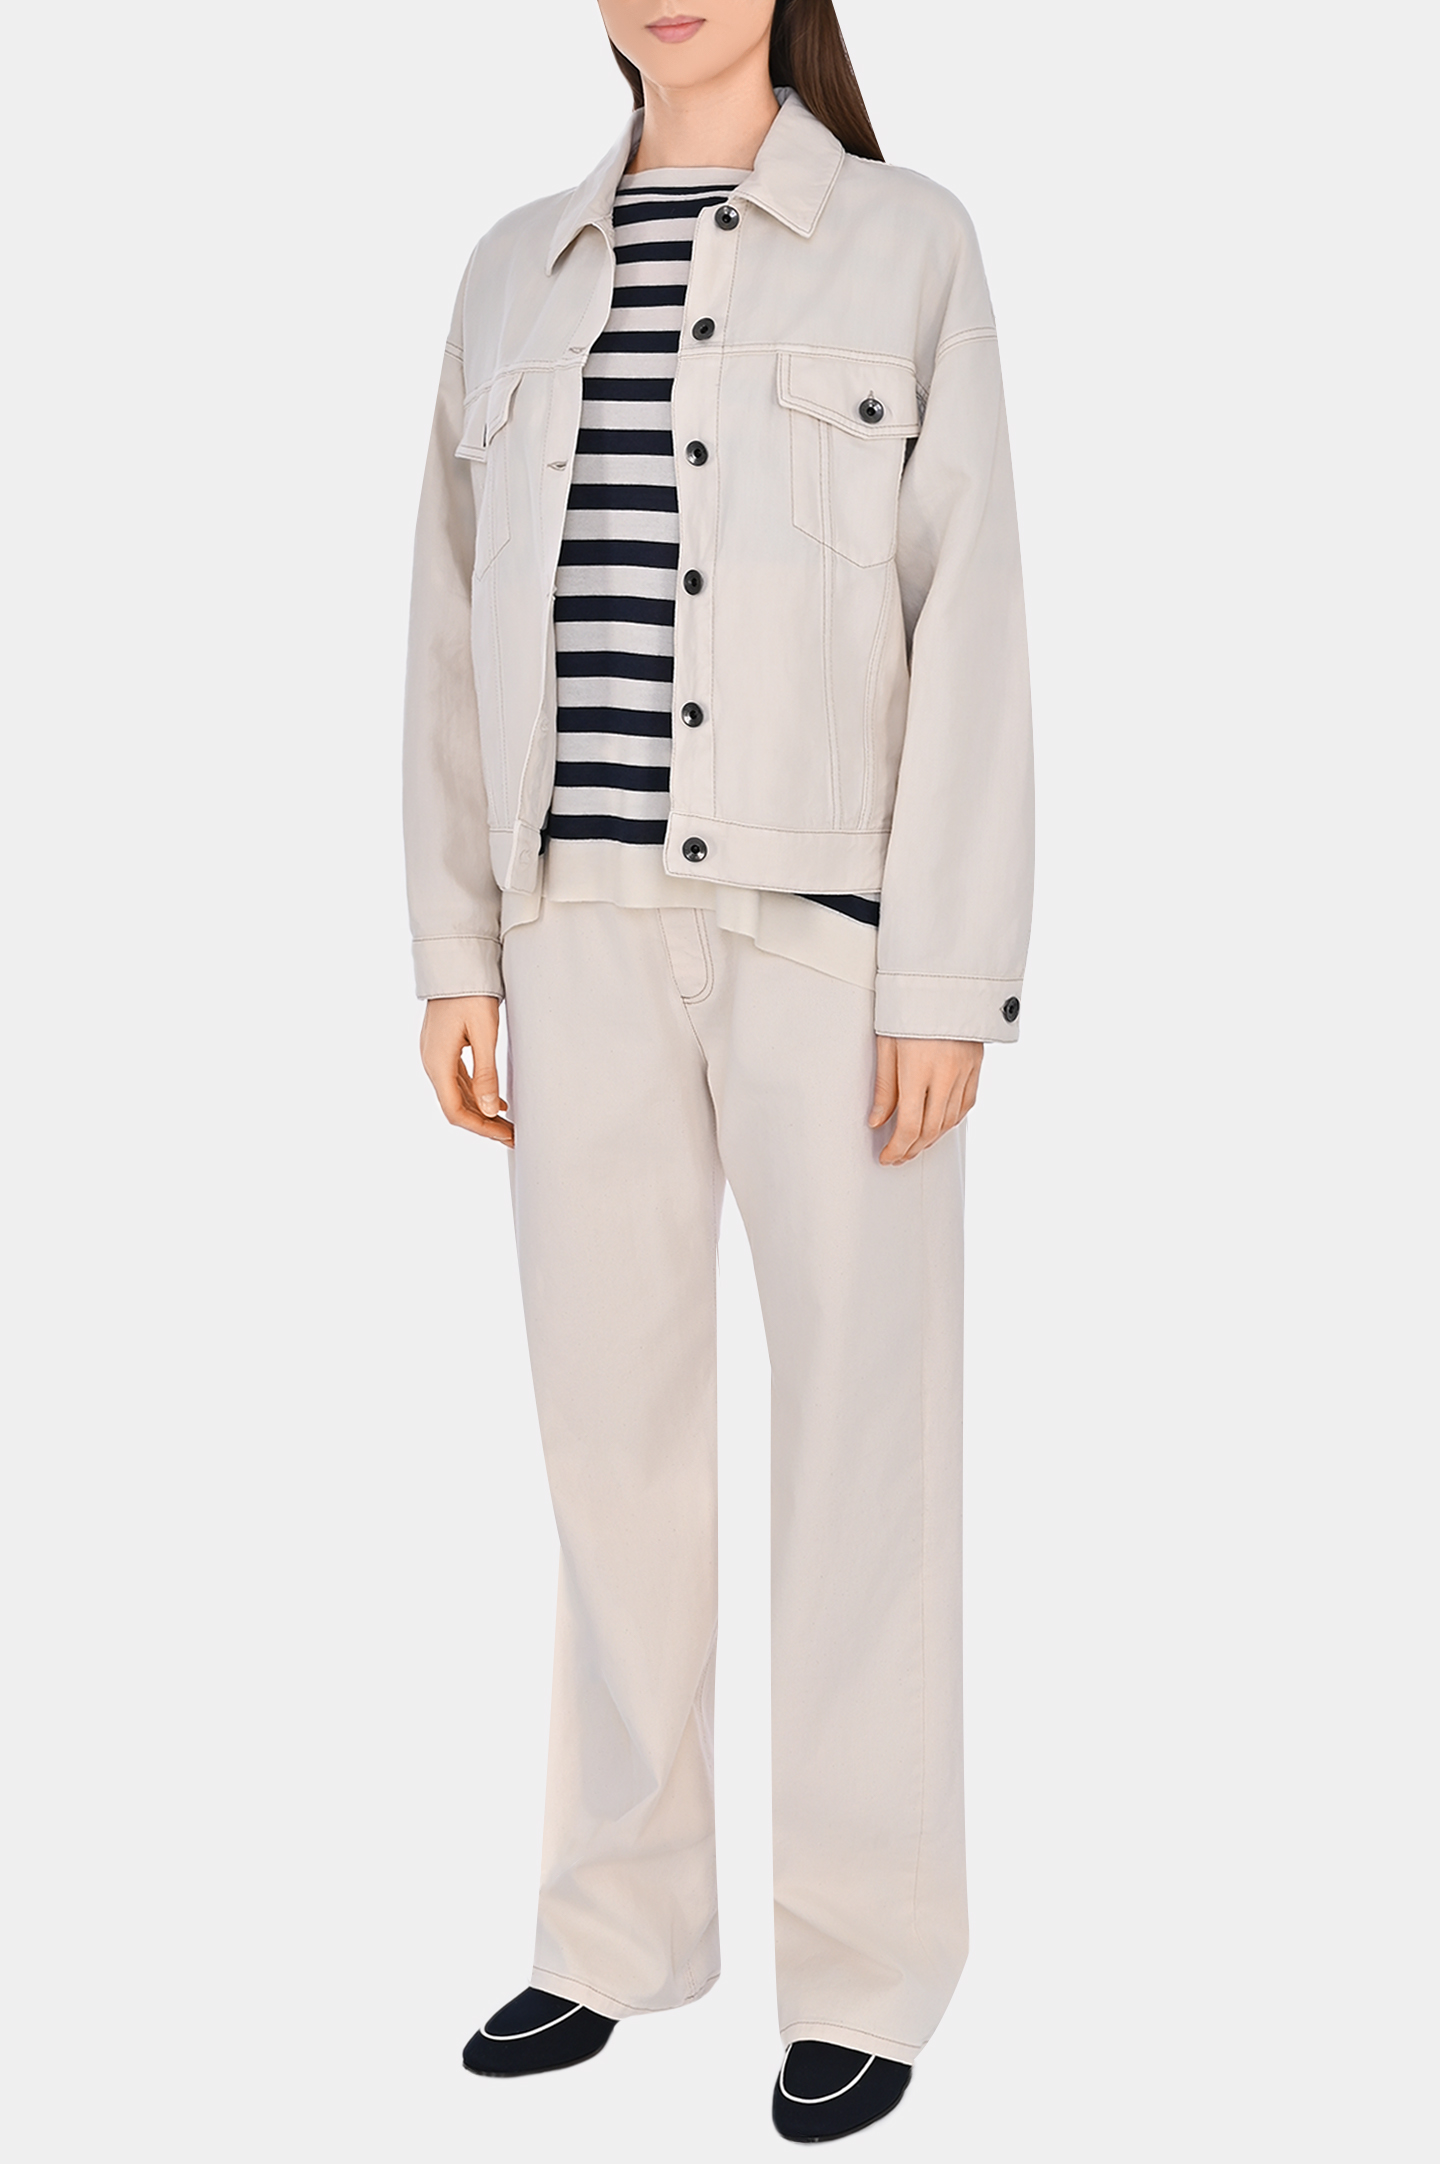 Джинсовая куртка с карманами BRUNELLO  CUCINELLI ML9962994, цвет: Молочный, Женский